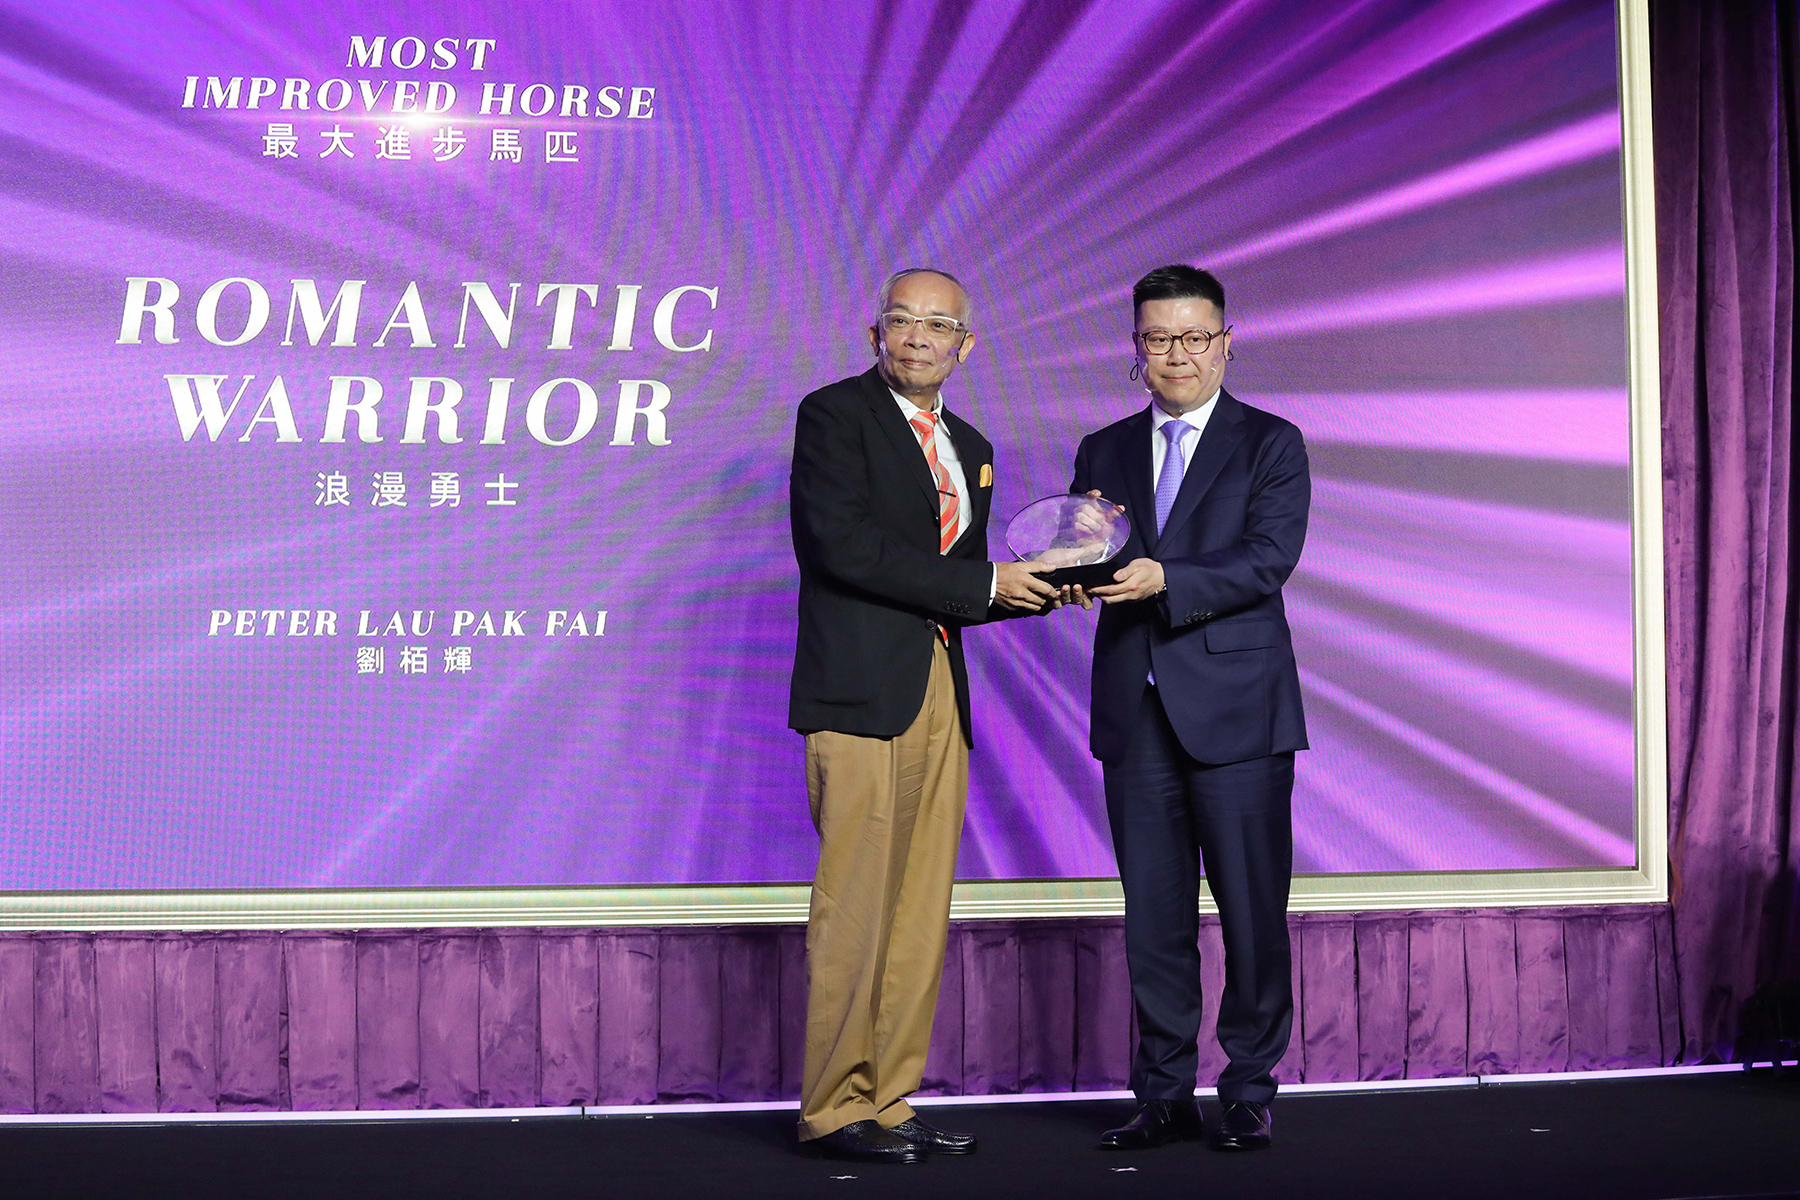 香港馬主協會會長林建康先生頒發最大進步馬匹獎座予「浪漫勇士」的馬主劉栢輝先生。